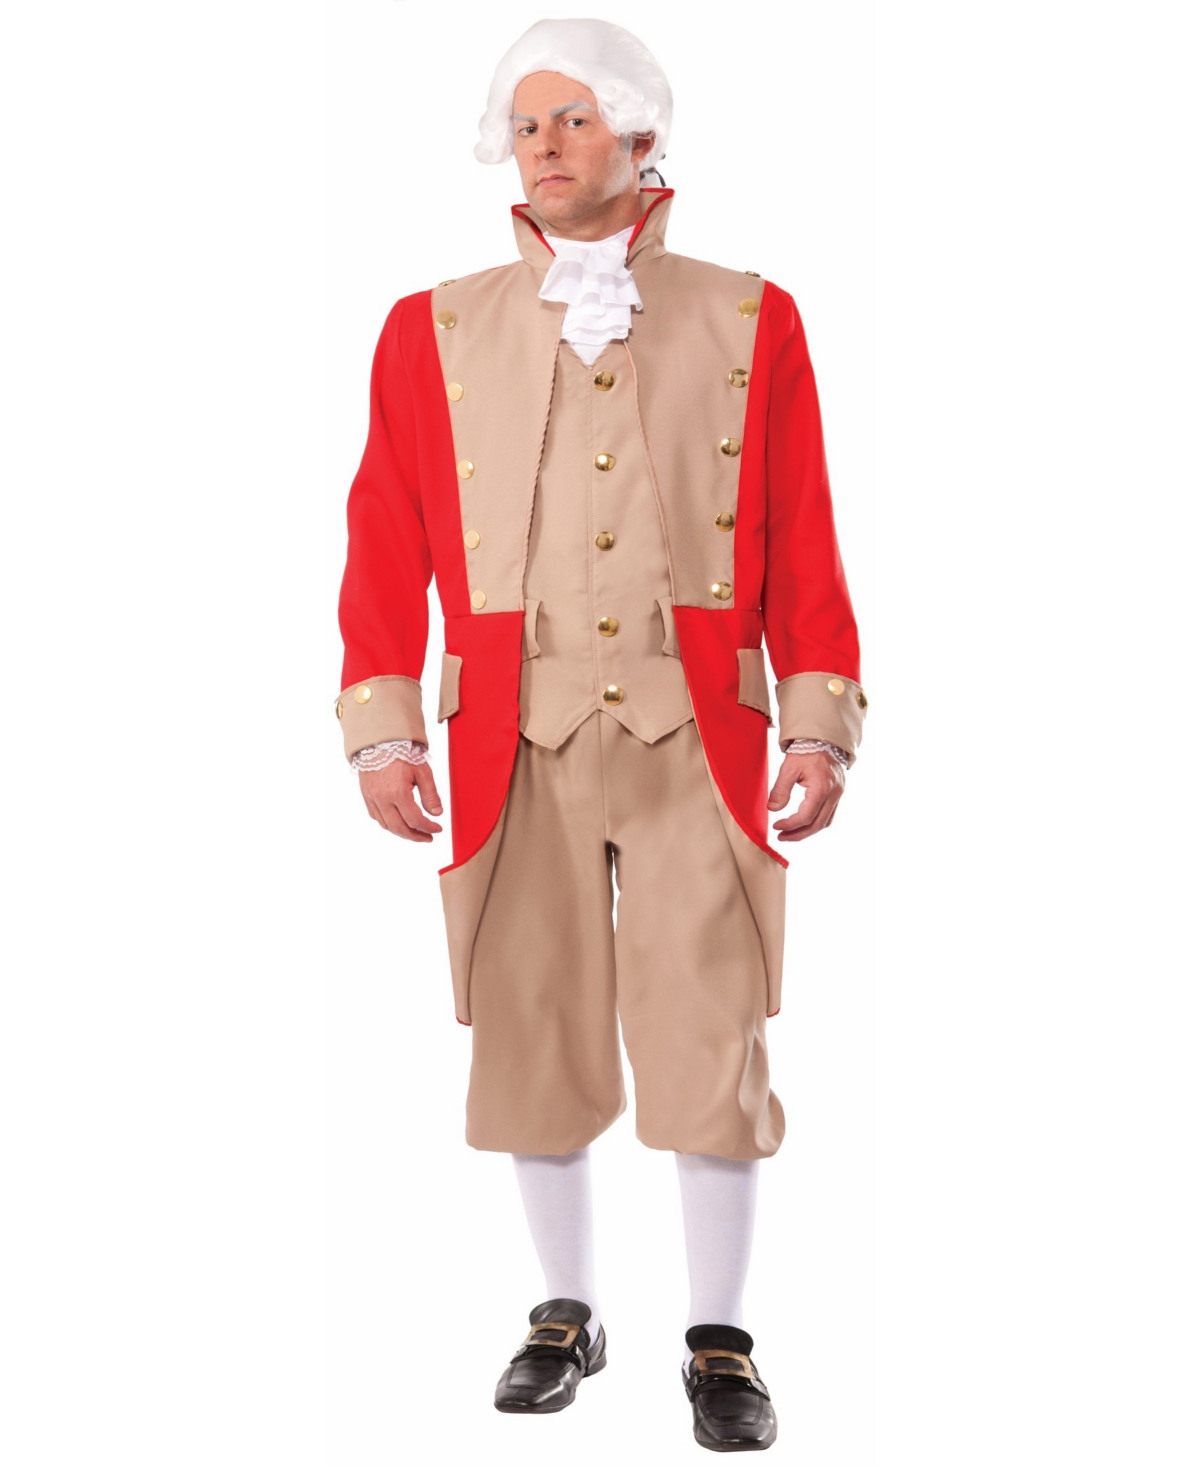 BuySeason Men's British Coat Costume - Red